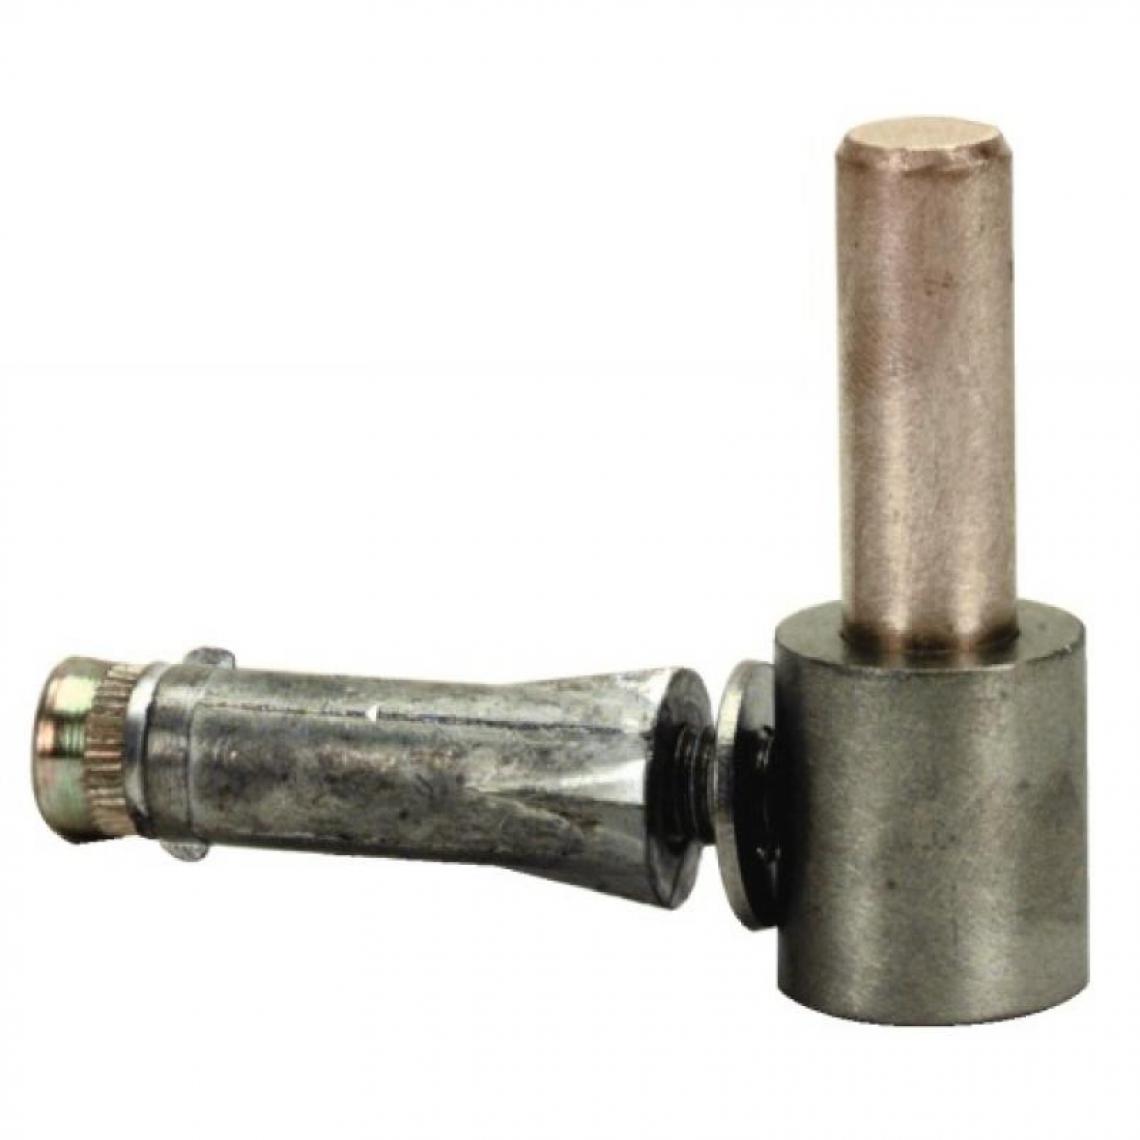 Torbel Industrie - Gond à vis métaux Inox 316 avec cheville axe Ø 14 - Charnière de fenetre